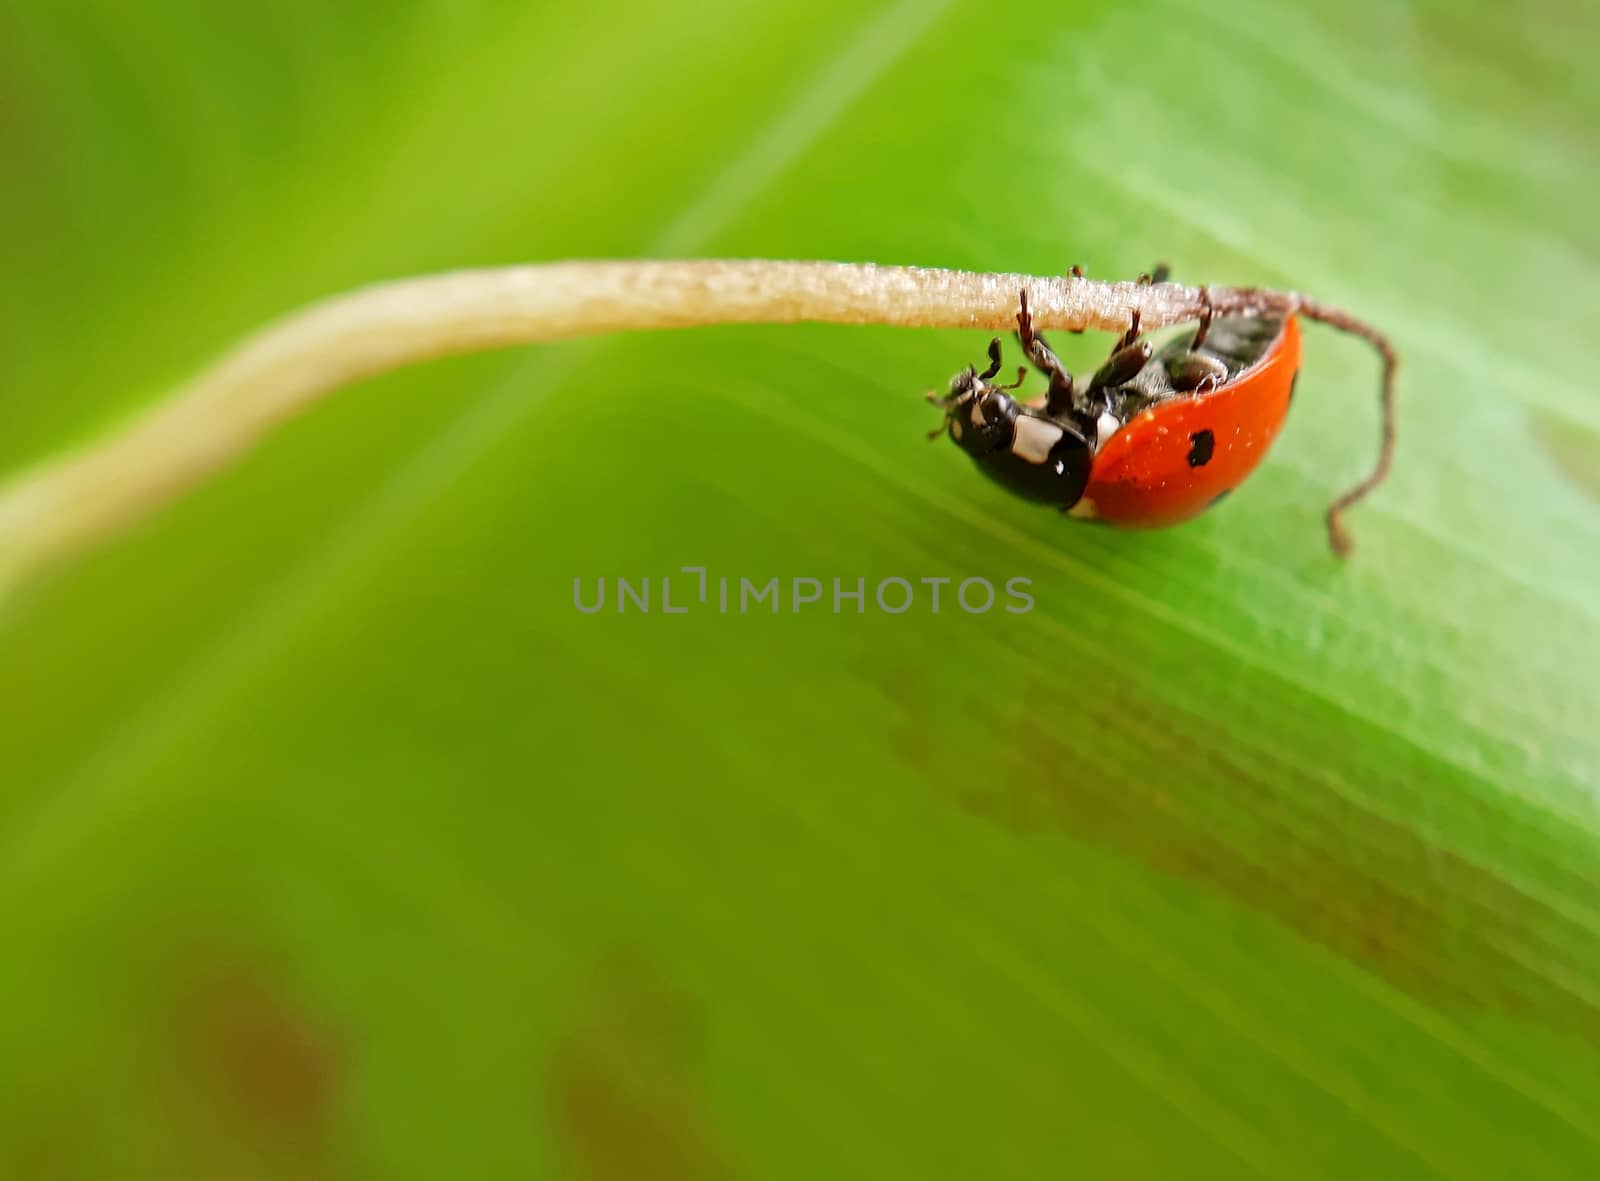 A ladybug on a banana leaf macro.